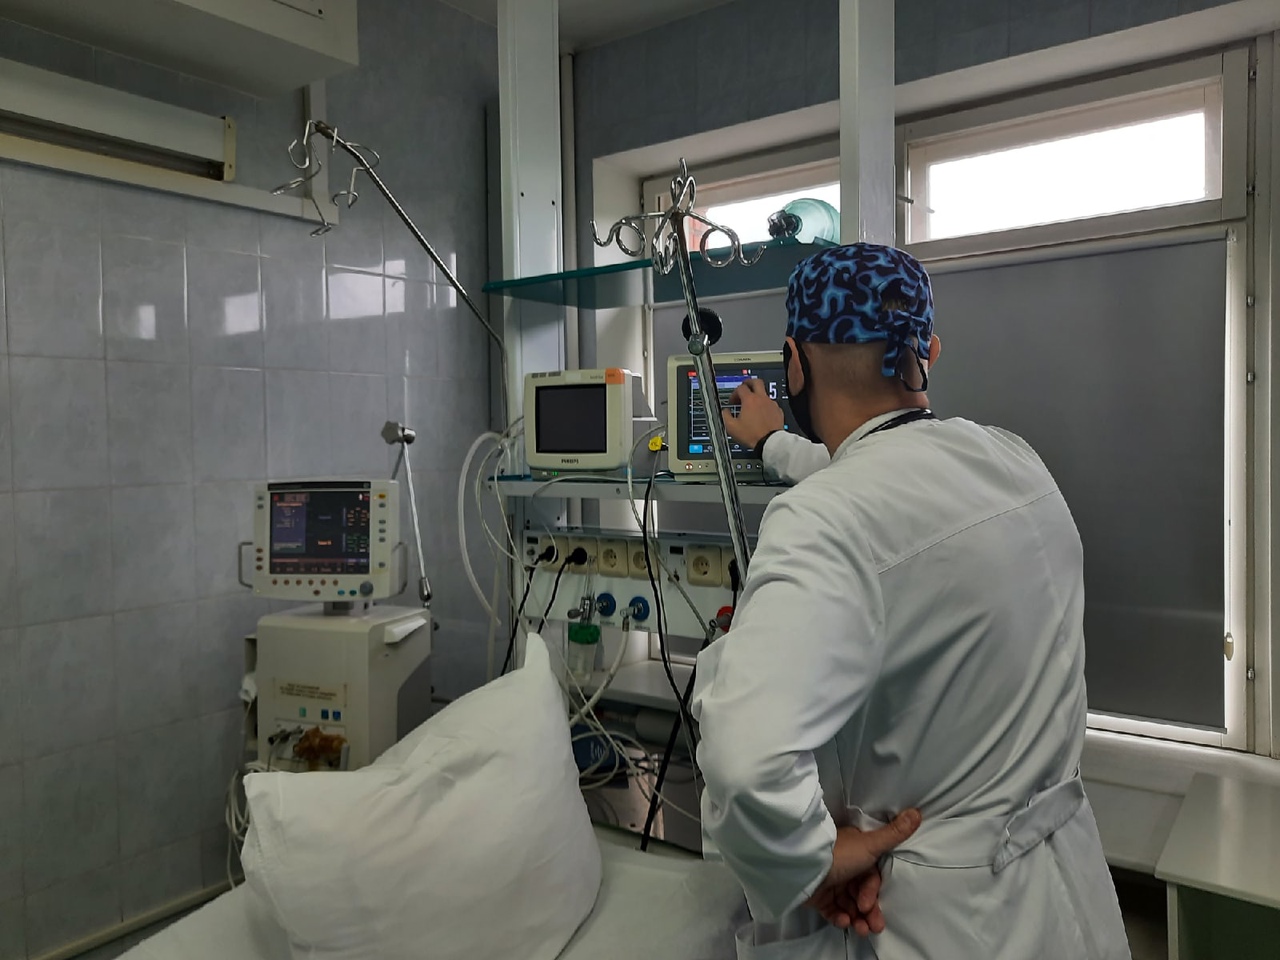 В Тульской областной клинической больнице провели внеплановую проверку аппаратов ИВЛ